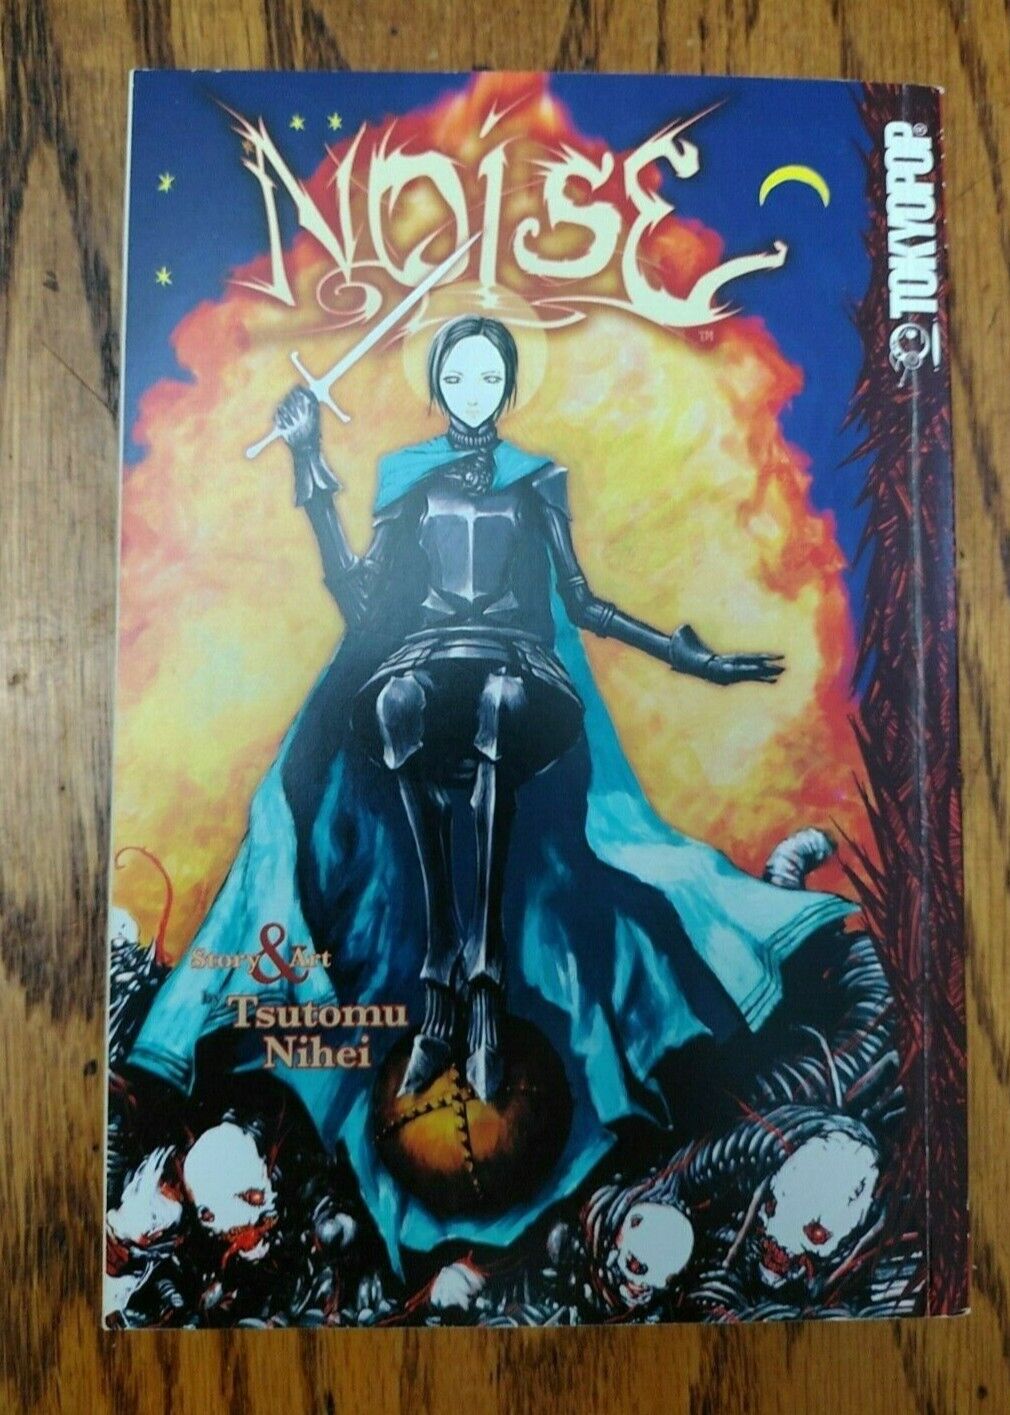 Noise Manga Comic Book  English Tsutomu Nihei RARE OOP